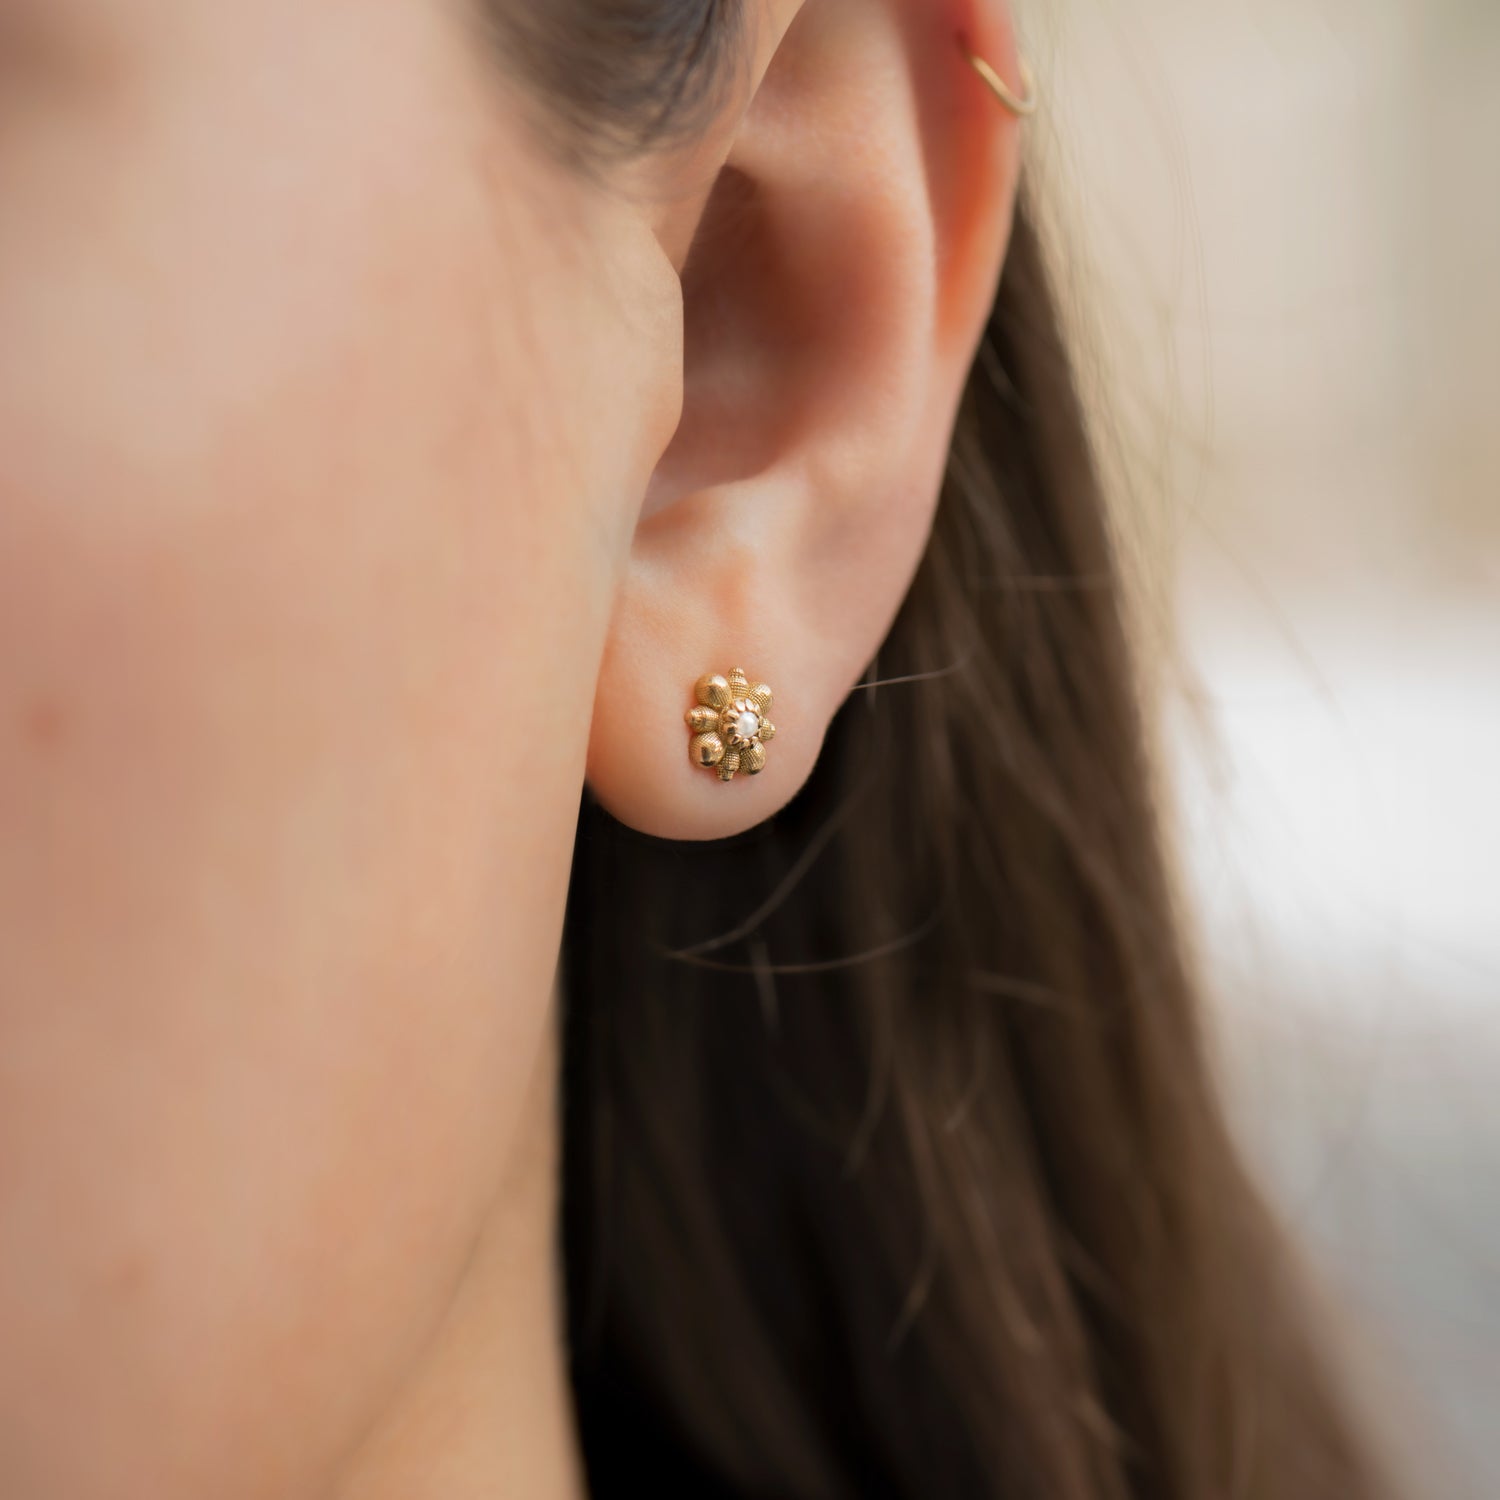 Drop Crystals Ear Jacket | Flower earrings studs, Crystal stud earrings,  Gold jewelry fashion